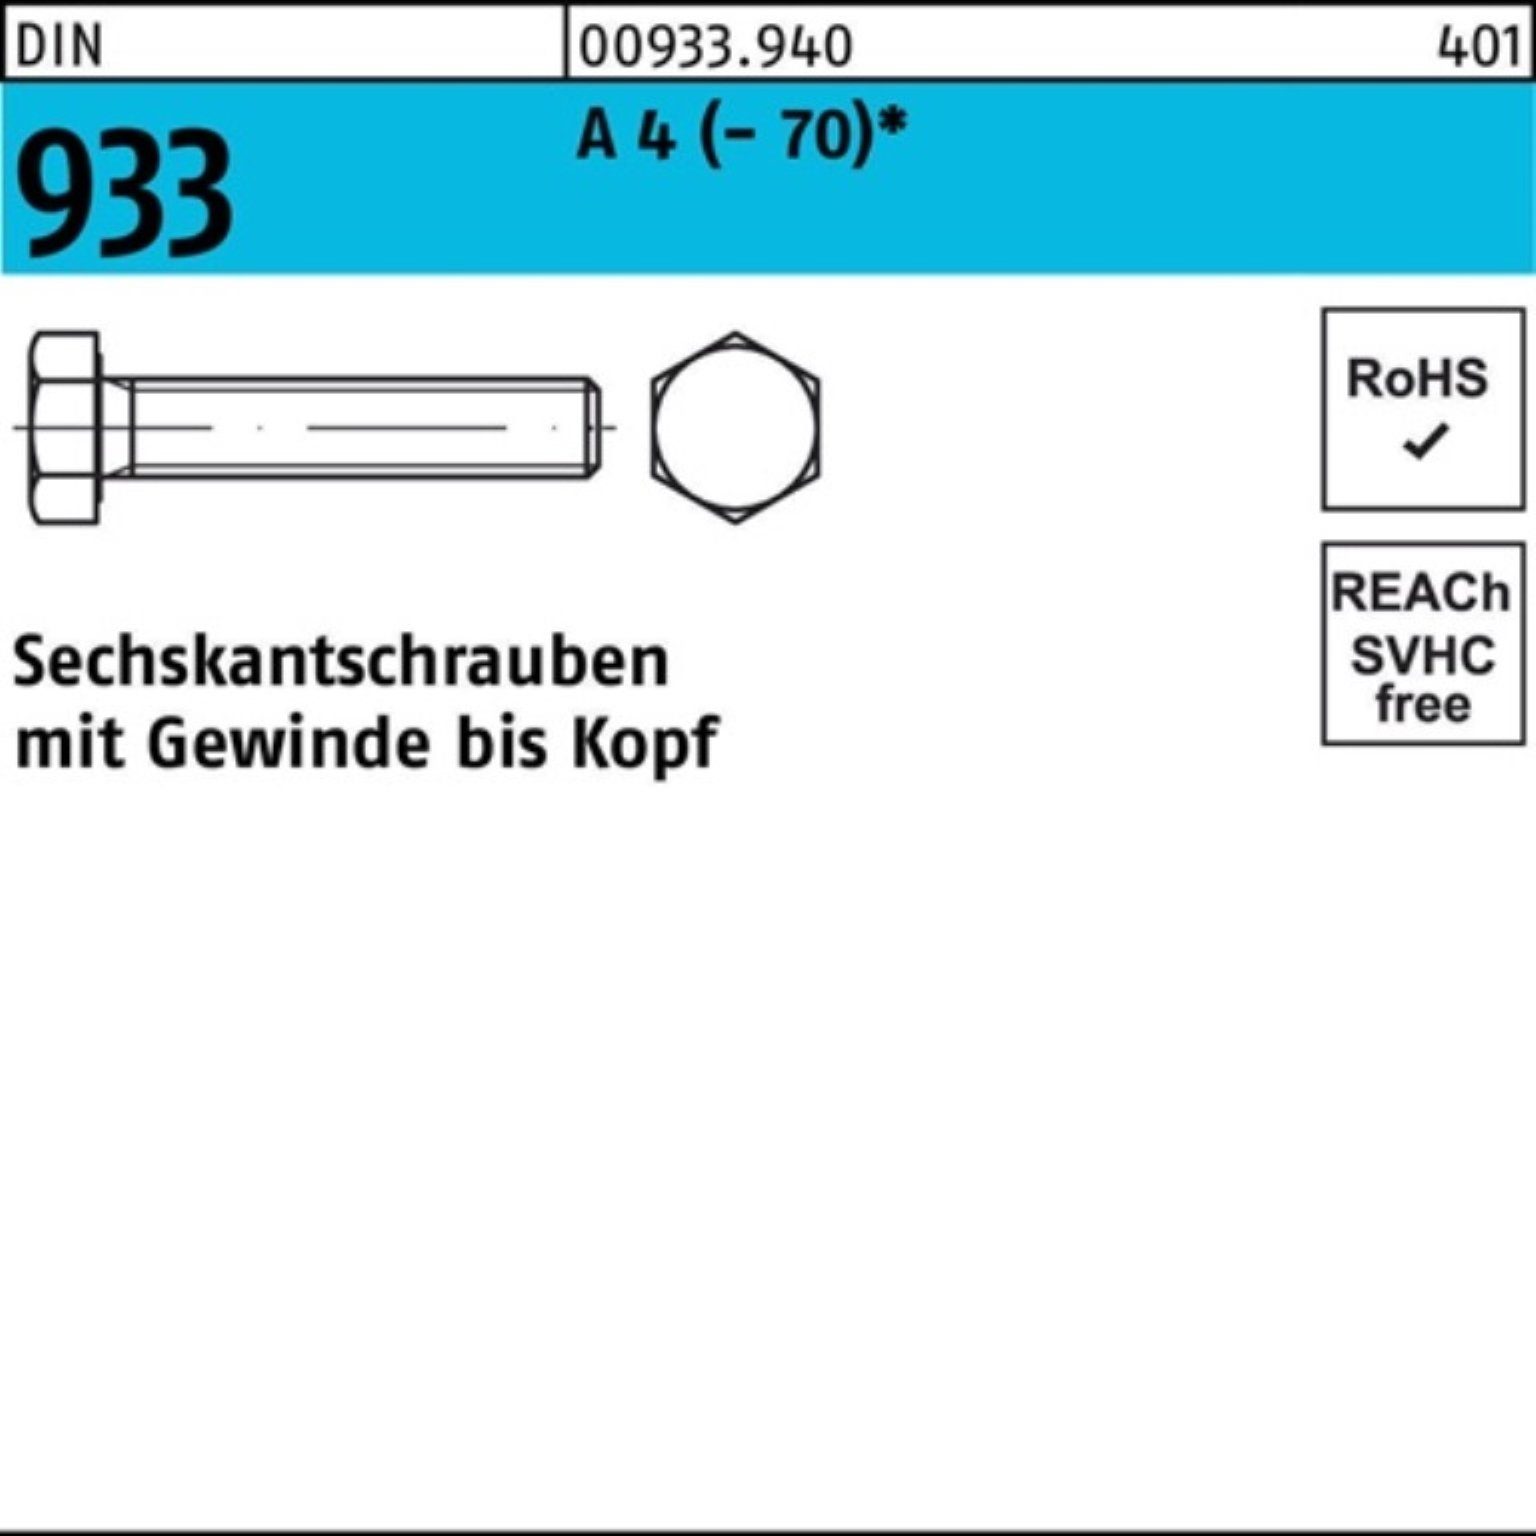 Reyher Sechskantschraube Pack DIN (70) VG D 933 Sechskantschraube A 110 1 100er Stück M14x 4